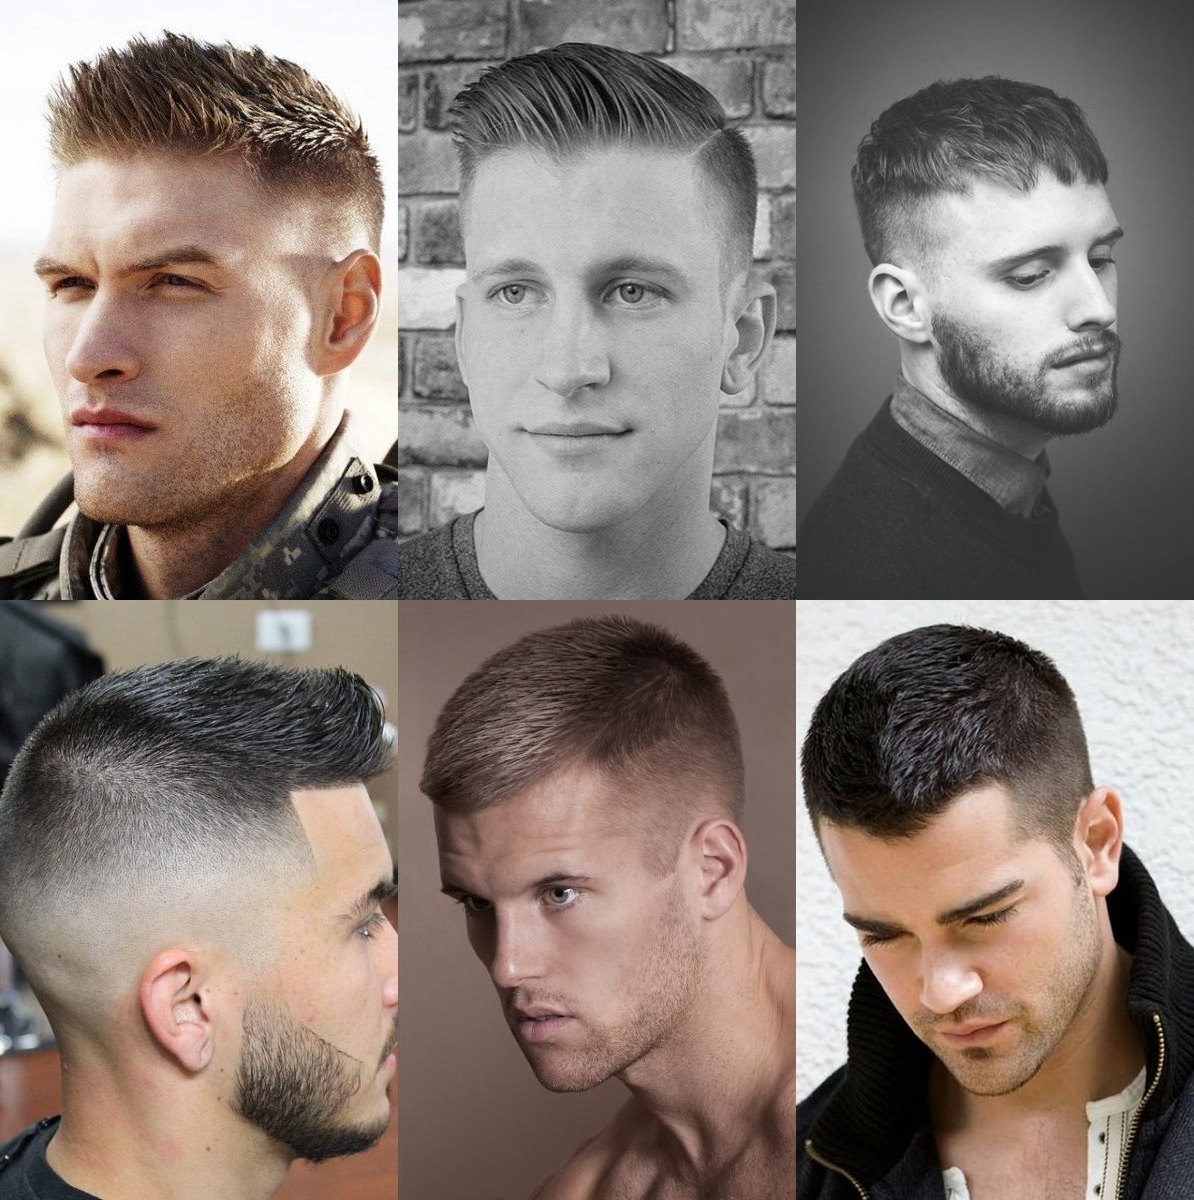 corte militar, haircut military for men, hairstyle for men, penteado masculino, corte de cabelo masculino, cortes 2017, penteados 2017, alex cursino, moda sem censura, menswear, blogger, 2